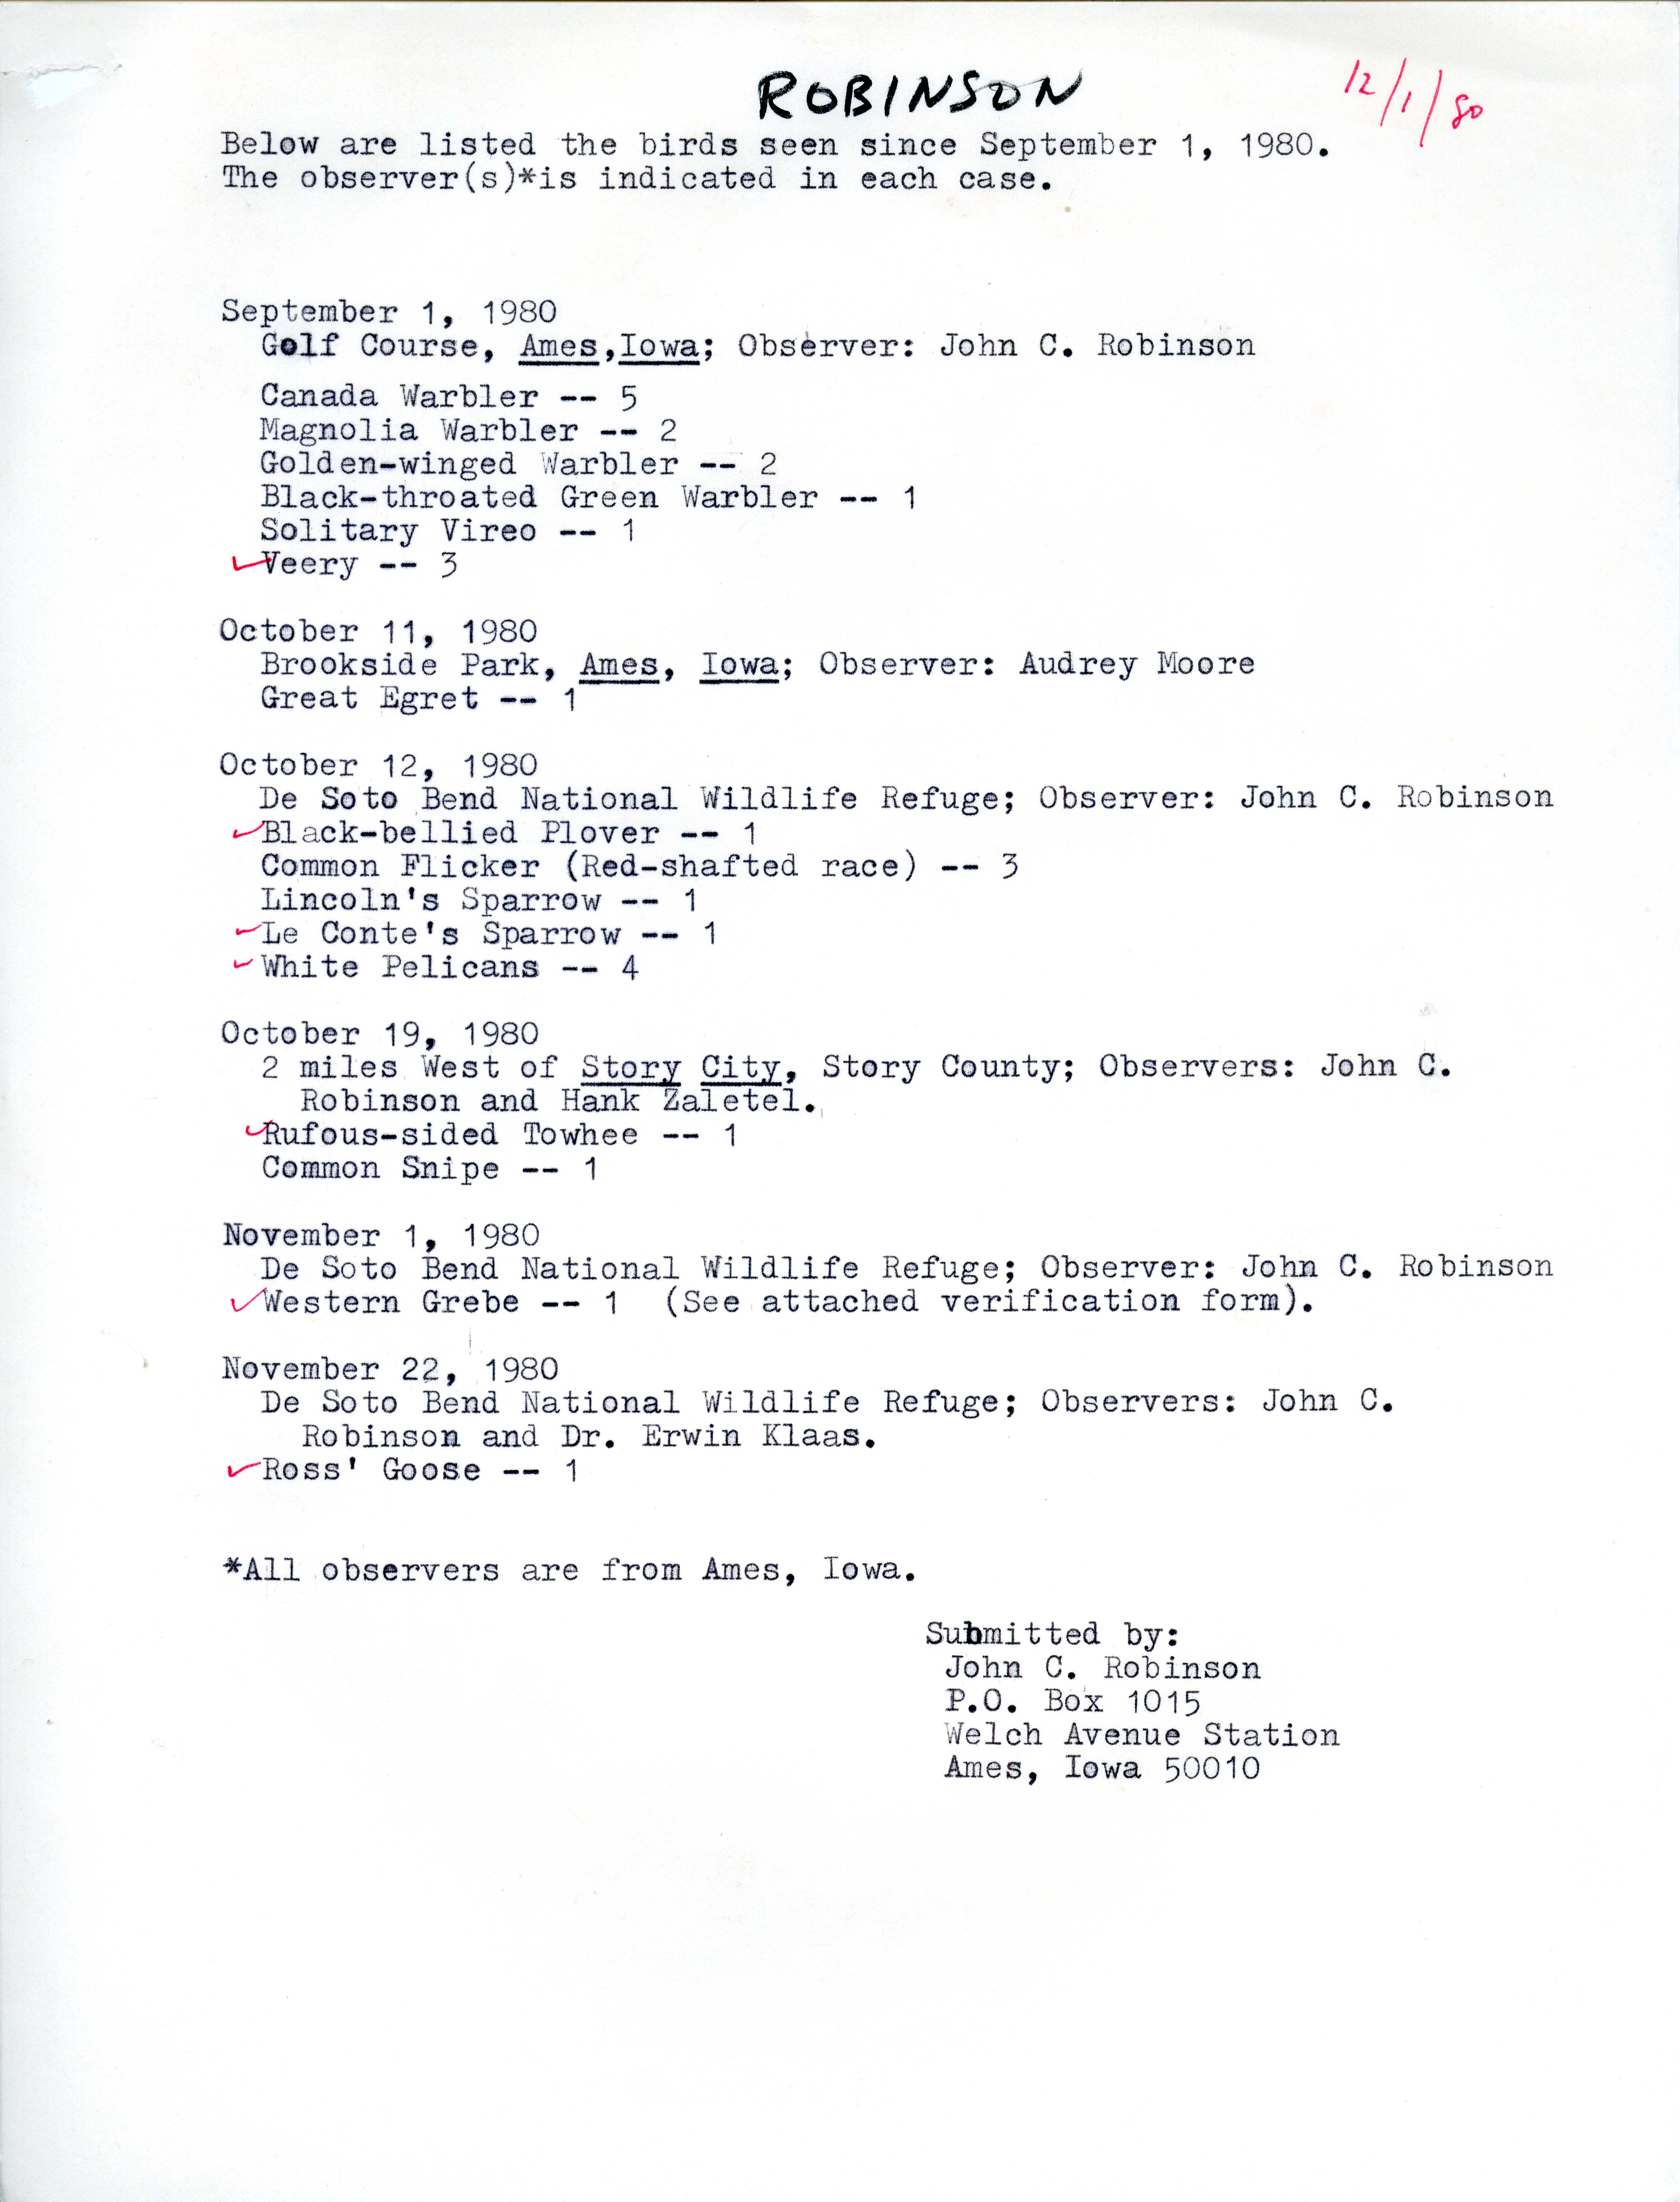 John C. Robinson list of birds seen since September 1, 1980